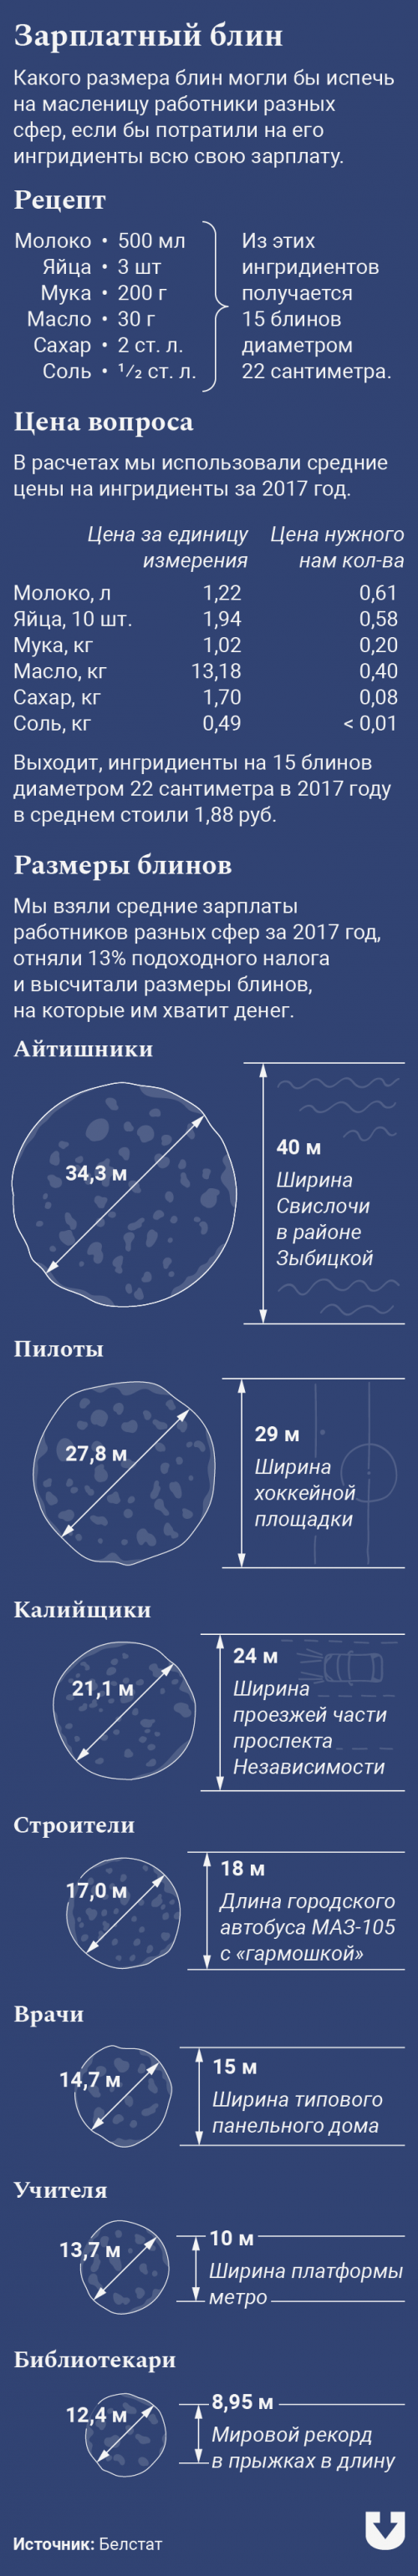 Зарплаты в блинах: сколько мучных изделий могут позволить белорусы разных профессий